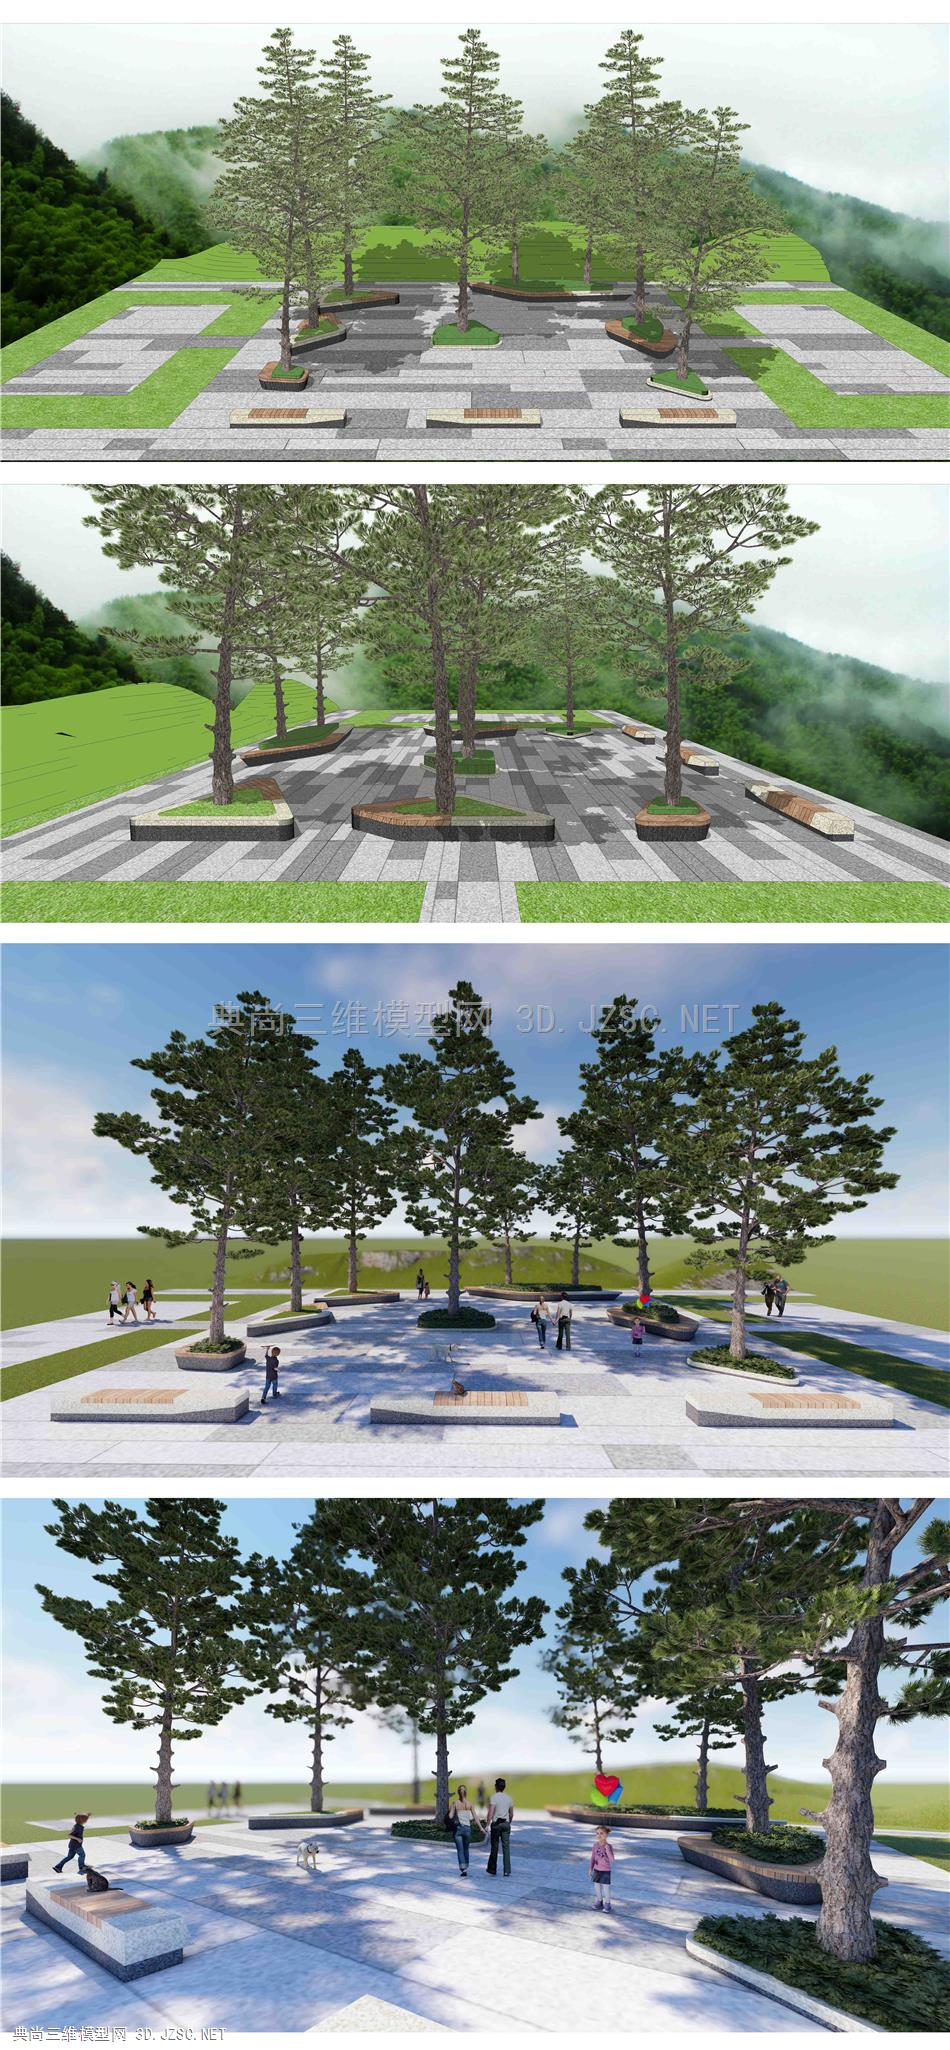 生态休闲广场 现代树池 种植花池坐凳 休息广场 树池广场铺砖景观 林下广场平台 公园景观